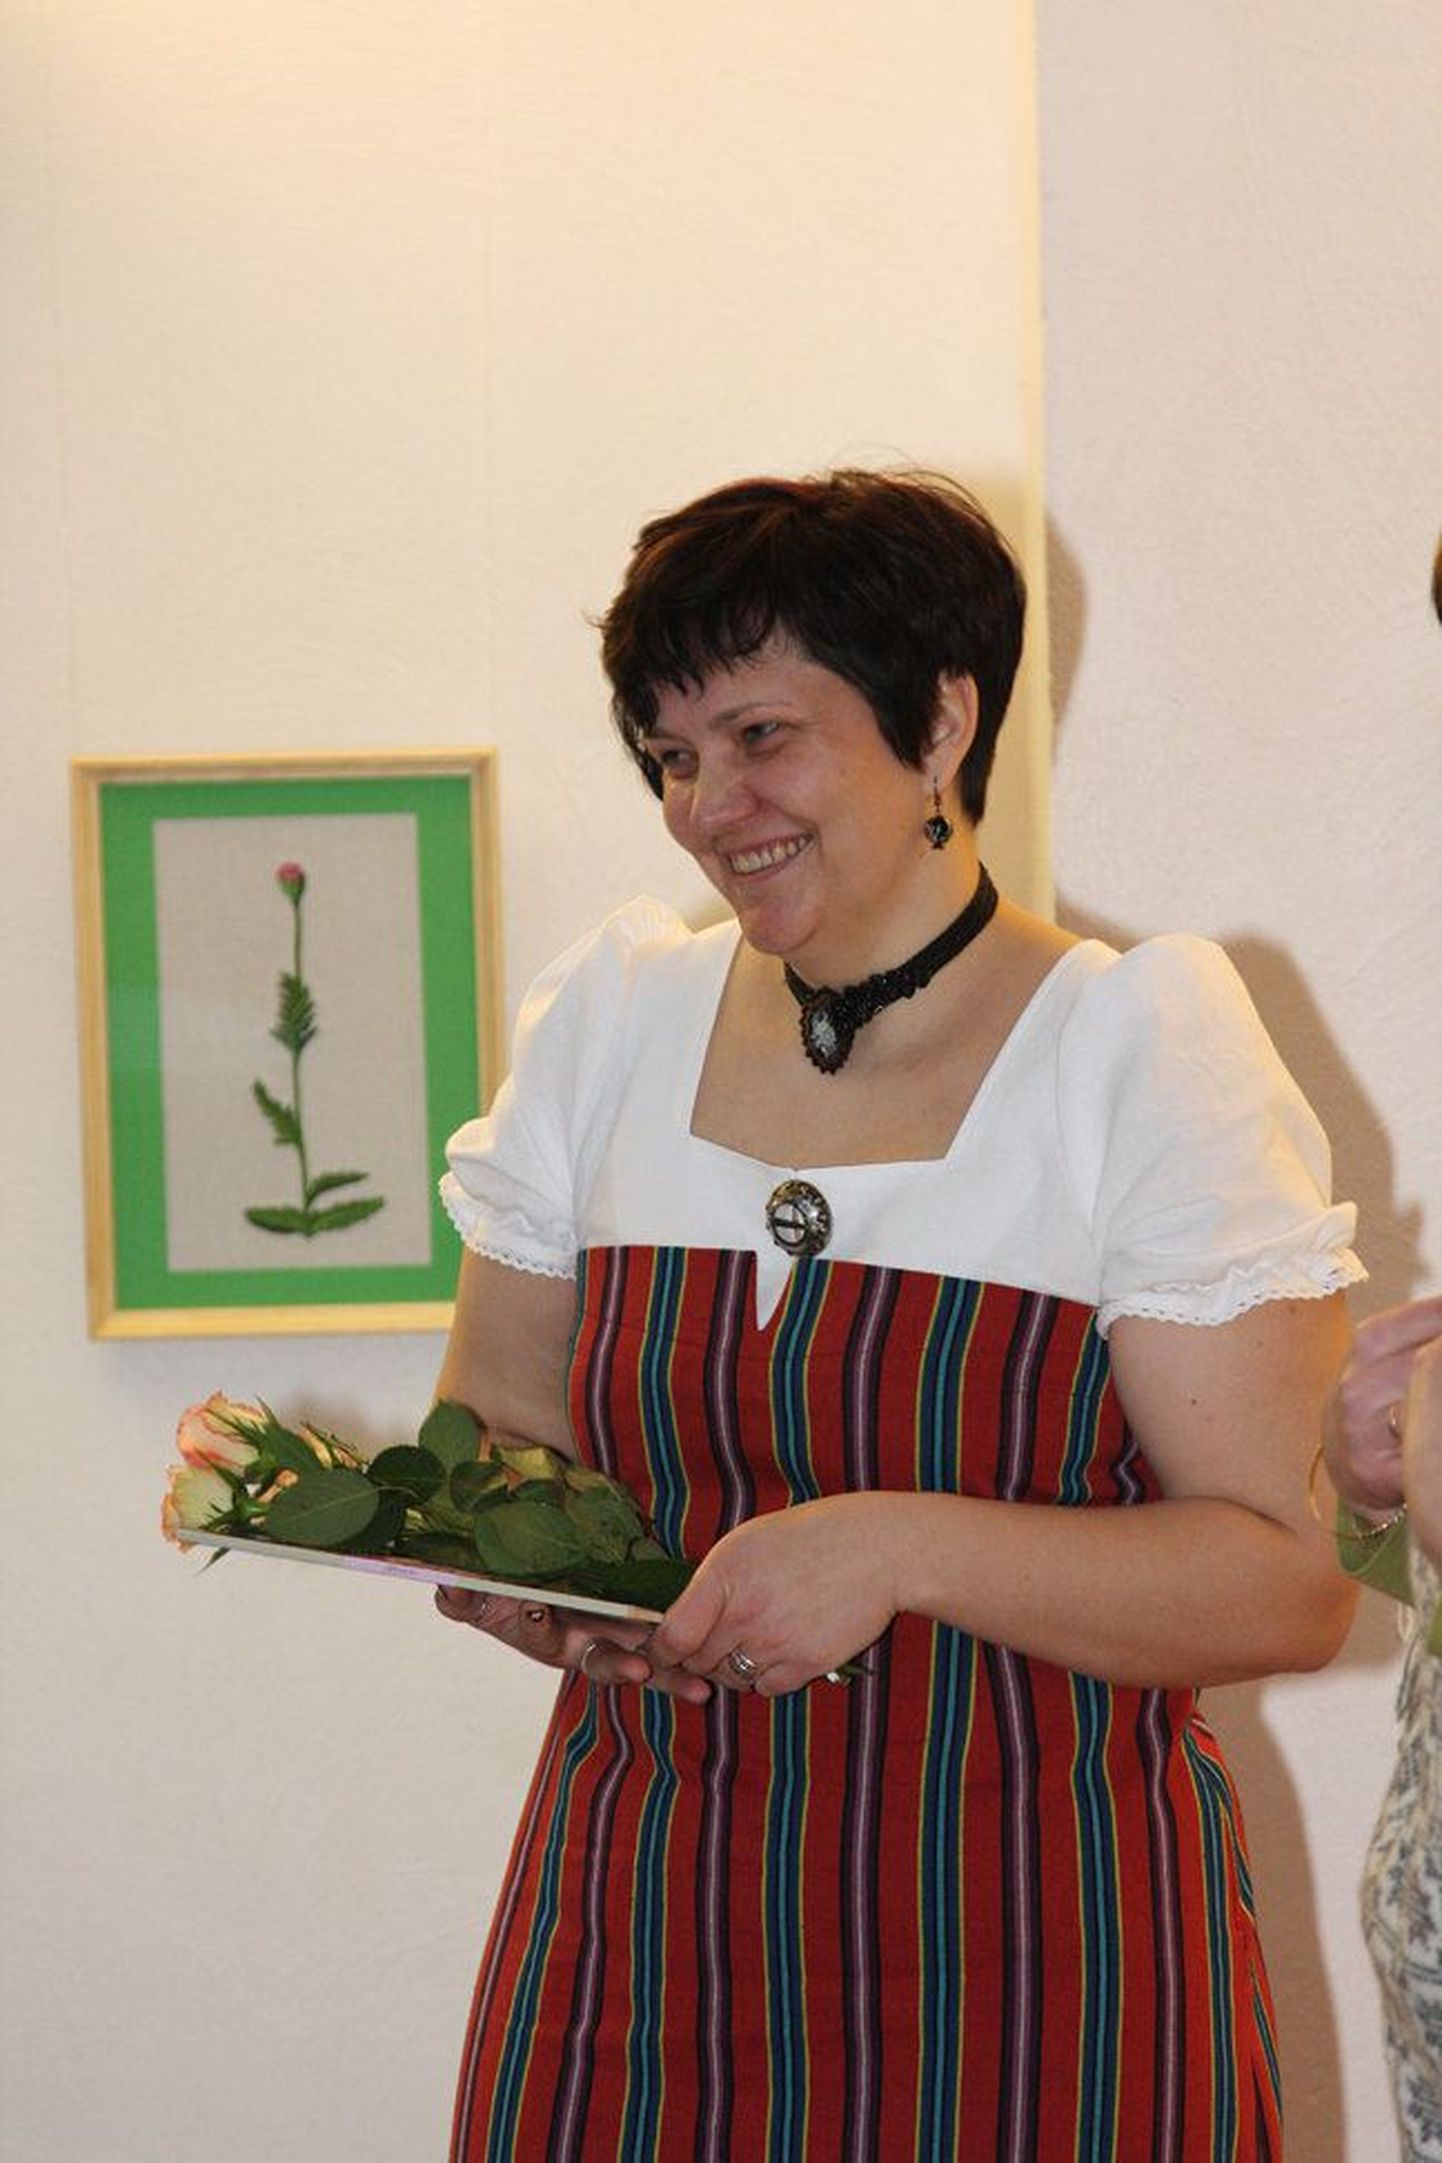 Aire Hulkko isikunäituse avamisel 
Valga kultuuri- ja huviala­keskuses 
2010. aastal.